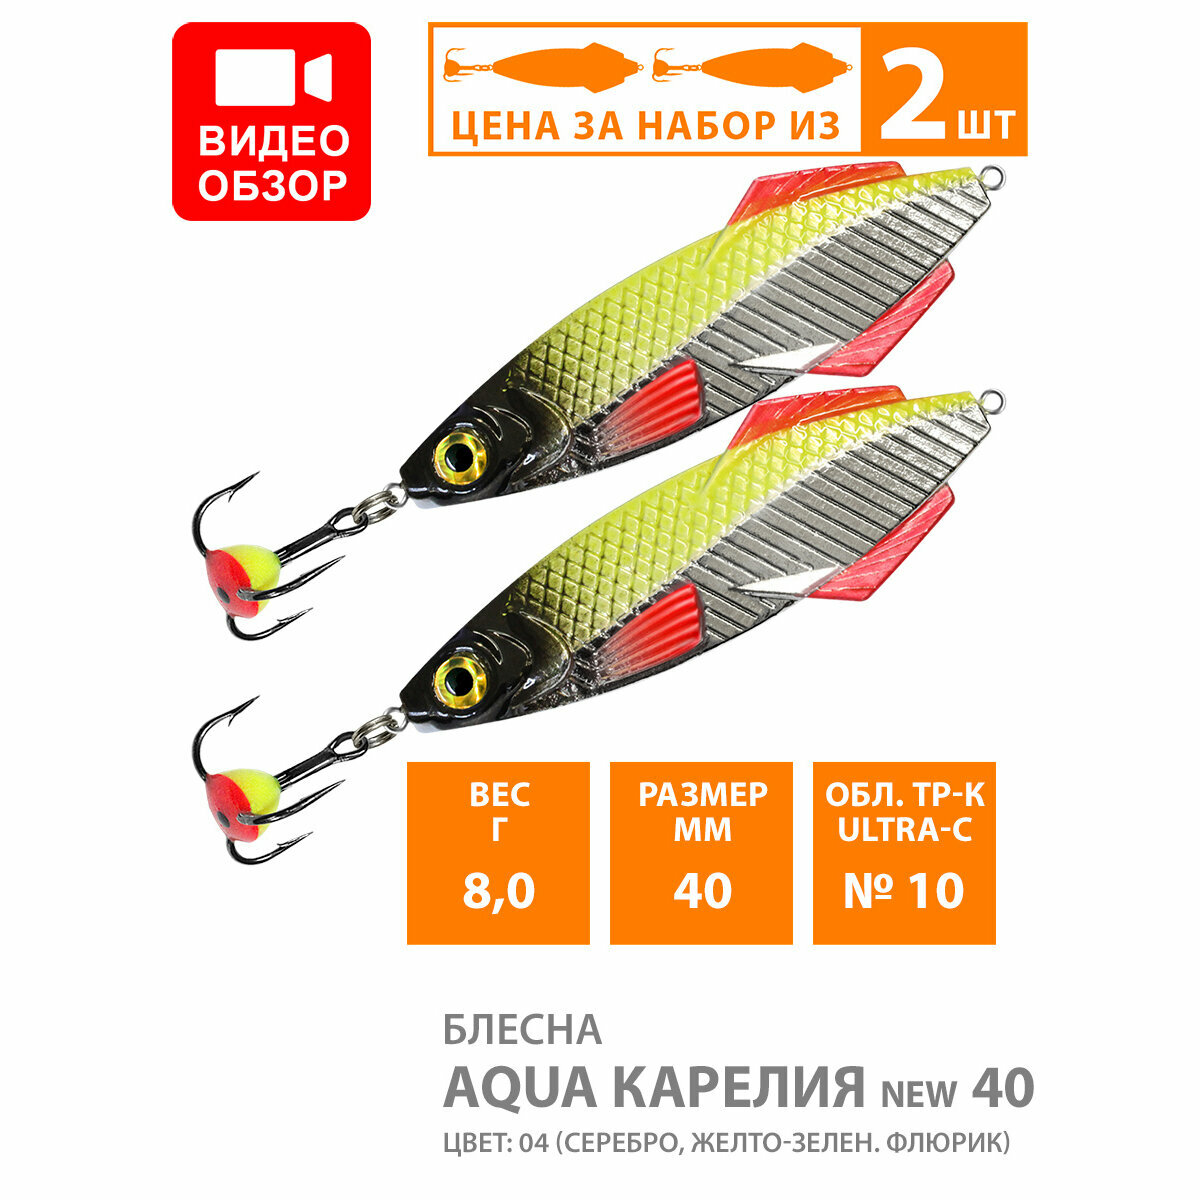 Блесна зимняя для рыбалки AQUA карелия NEW 360g цвет 06 (серебристо-черный) (набор 2 шт)